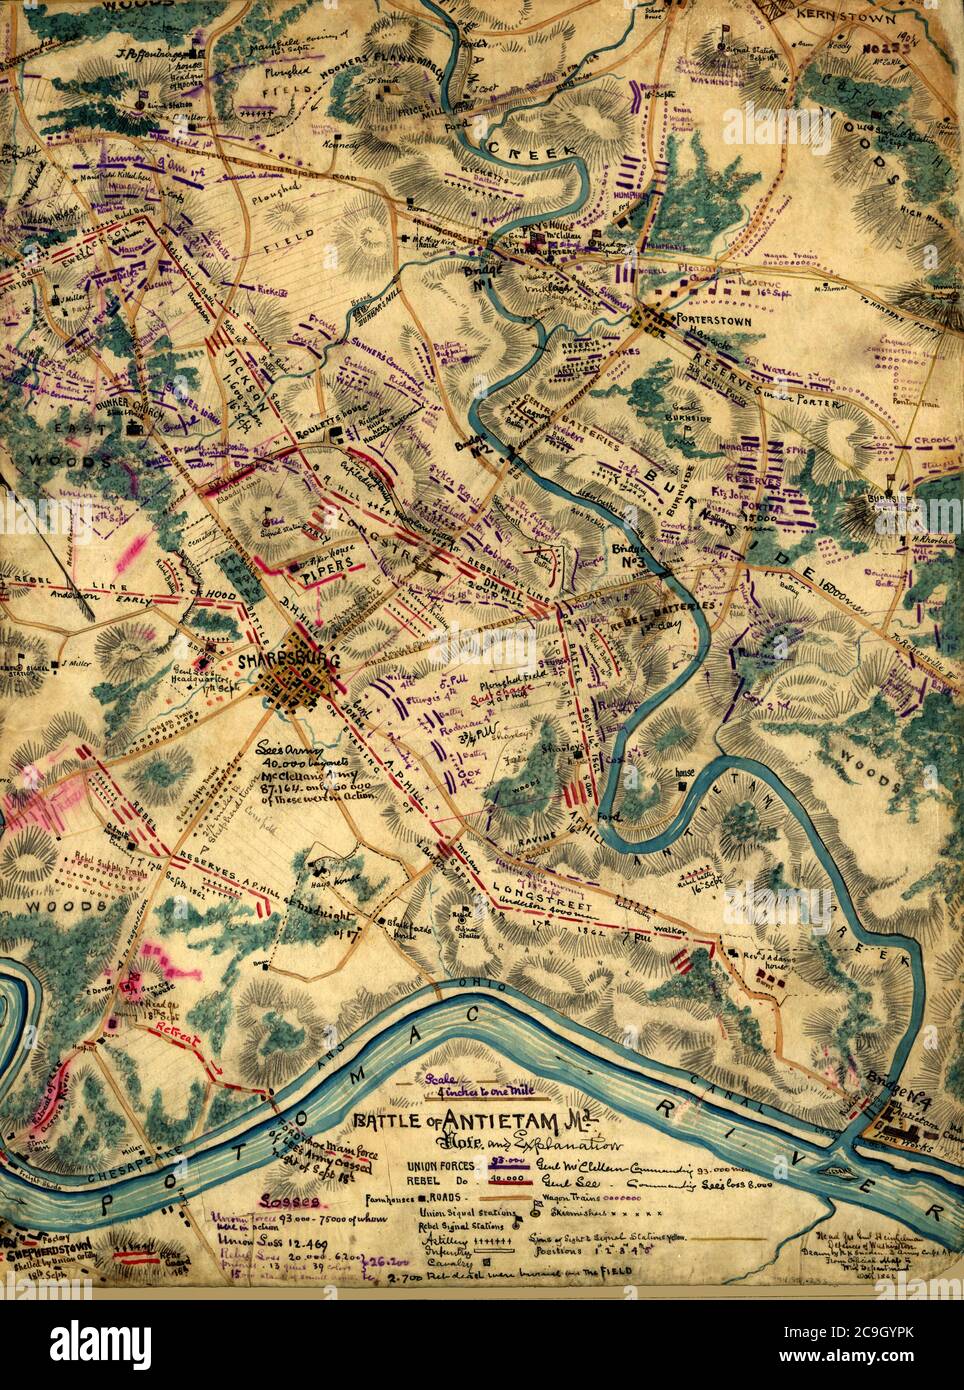 Schlacht von Antietam, Maryland - amerikanischer Bürgerkrieg - in dieser äußerst detaillierten Karte zeigt Sneden die Standorte von Straßen, Brücken, Chesapeake und Ohio Canal, Häuser, Scheunen, gepflügte Felder und die Antietam Iron Works. Die Signalstationen der Union und der Konföderierten sind ebenfalls erwähnt. Die Kampflinie befindet sich östlich der Stadt Sharpsburg am 16. September; umfasst die Stadt am 17. September (nach der tatsächlichen Schlacht); und westlich der Stadt am 18. September als Lees konföderierte Truppen zurück über den Potomac in Richtung Sheperdstown, West Virginia zurückgezogen Stockfoto